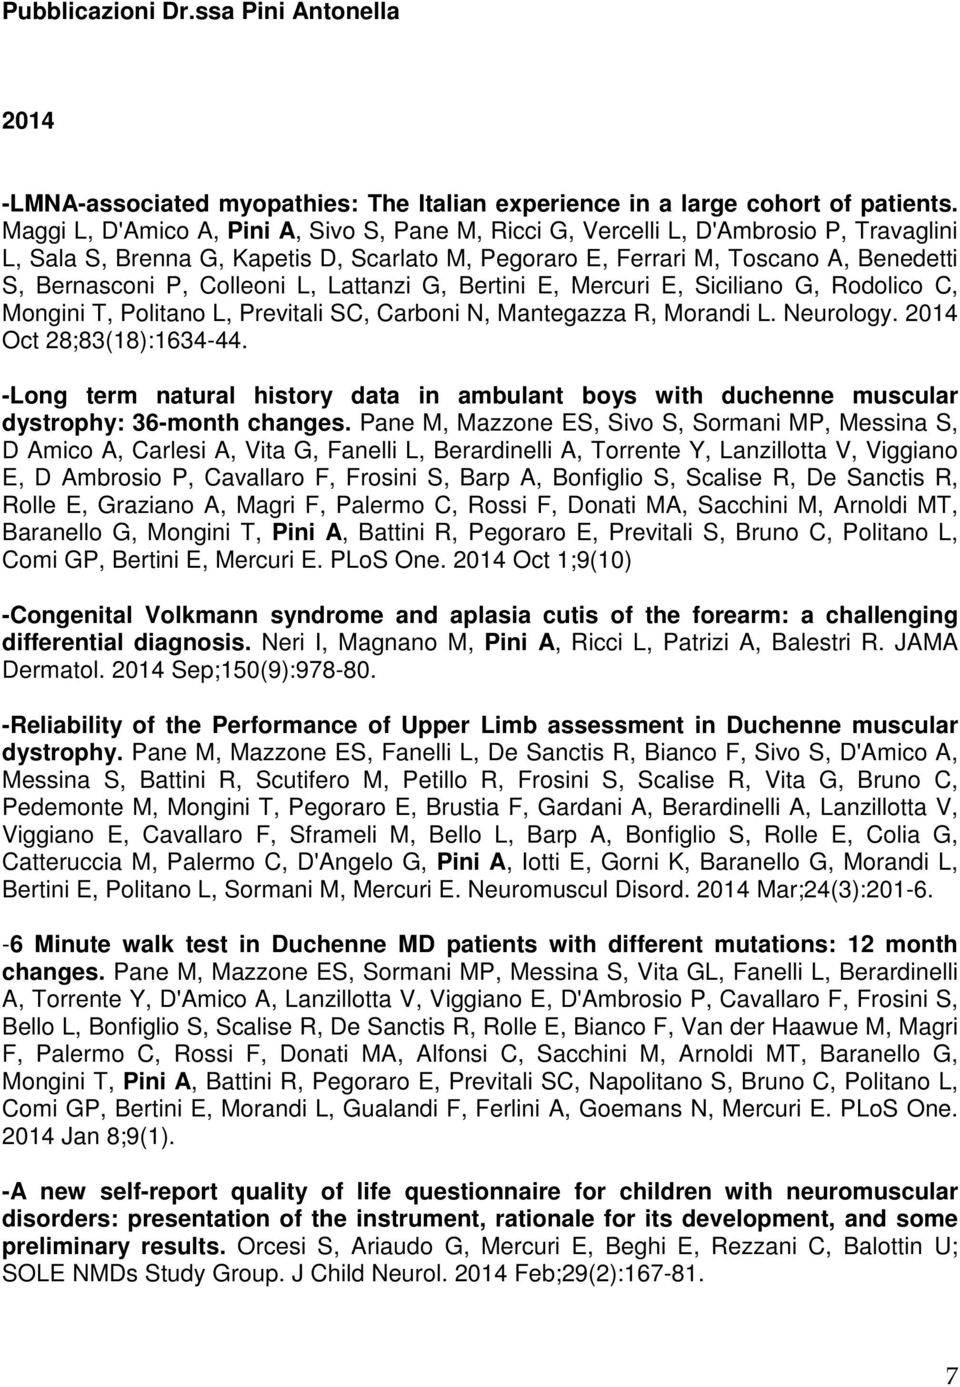 Colleoni L, Lattanzi G, Bertini E, Mercuri E, Siciliano G, Rodolico C, Mongini T, Politano L, Previtali SC, Carboni N, Mantegazza R, Morandi L. Neurology. 2014 Oct 28;83(18):1634-44.